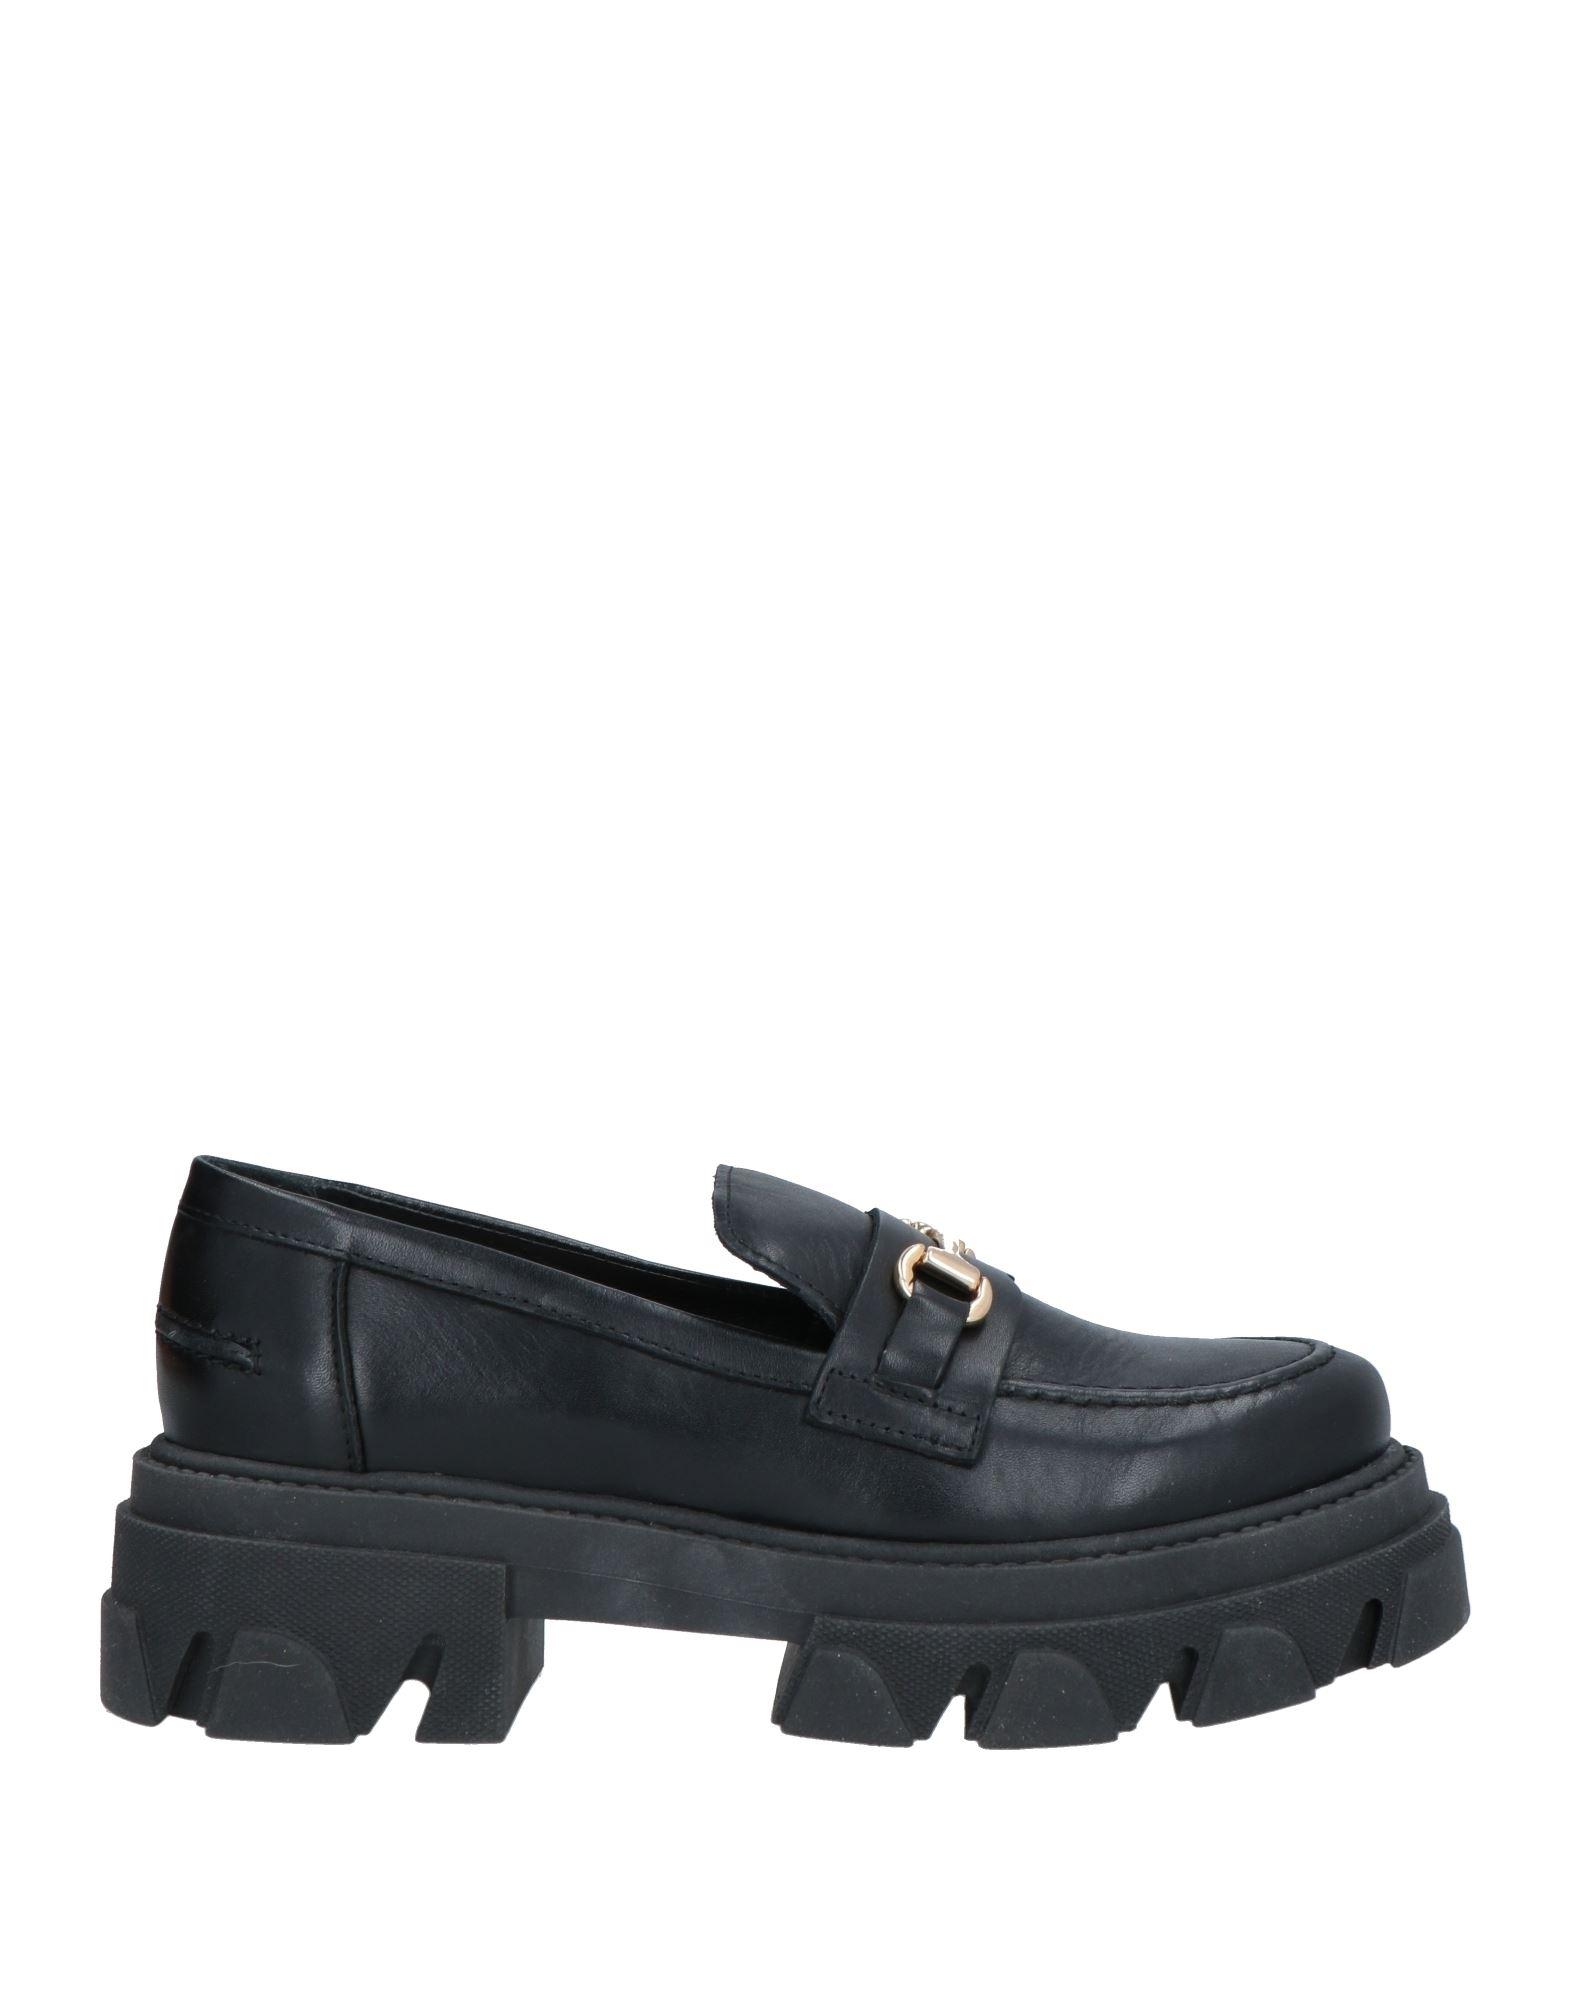 søster Ellers kød Shoe Biz Copenhagen Loafers in Black | Lyst